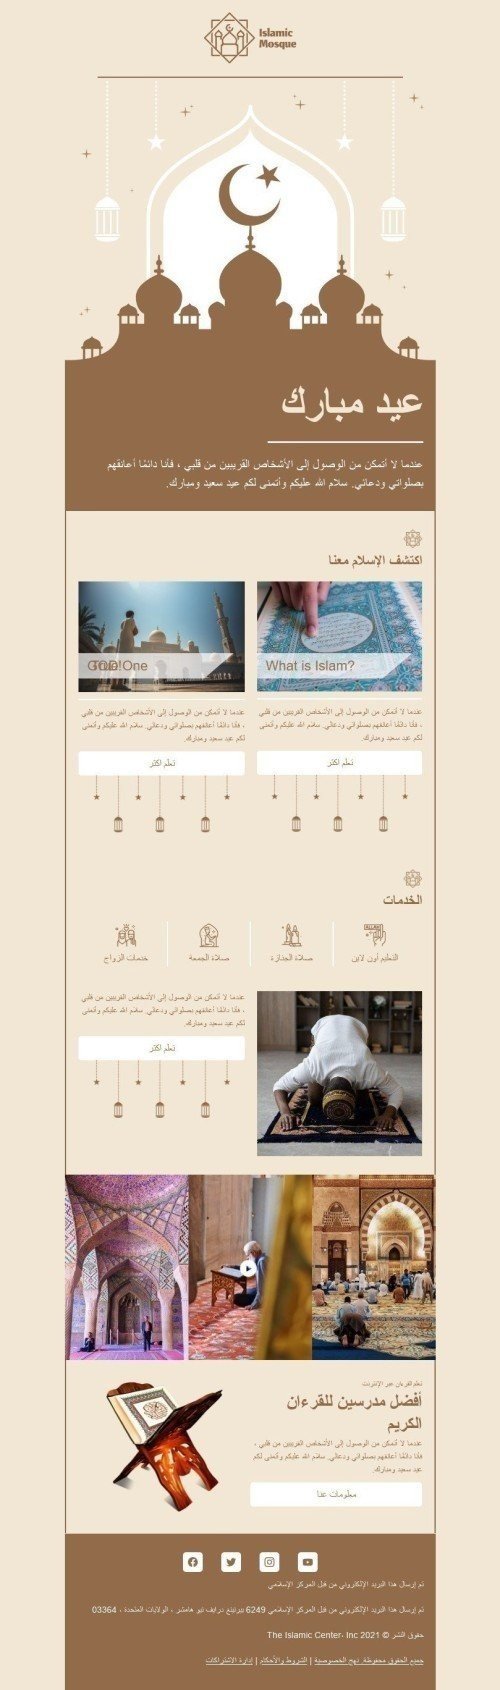 Modello Email Kurban Bayrami «Moschea islamica» per il settore industriale di No profit e beneficenza Visualizzazione desktop